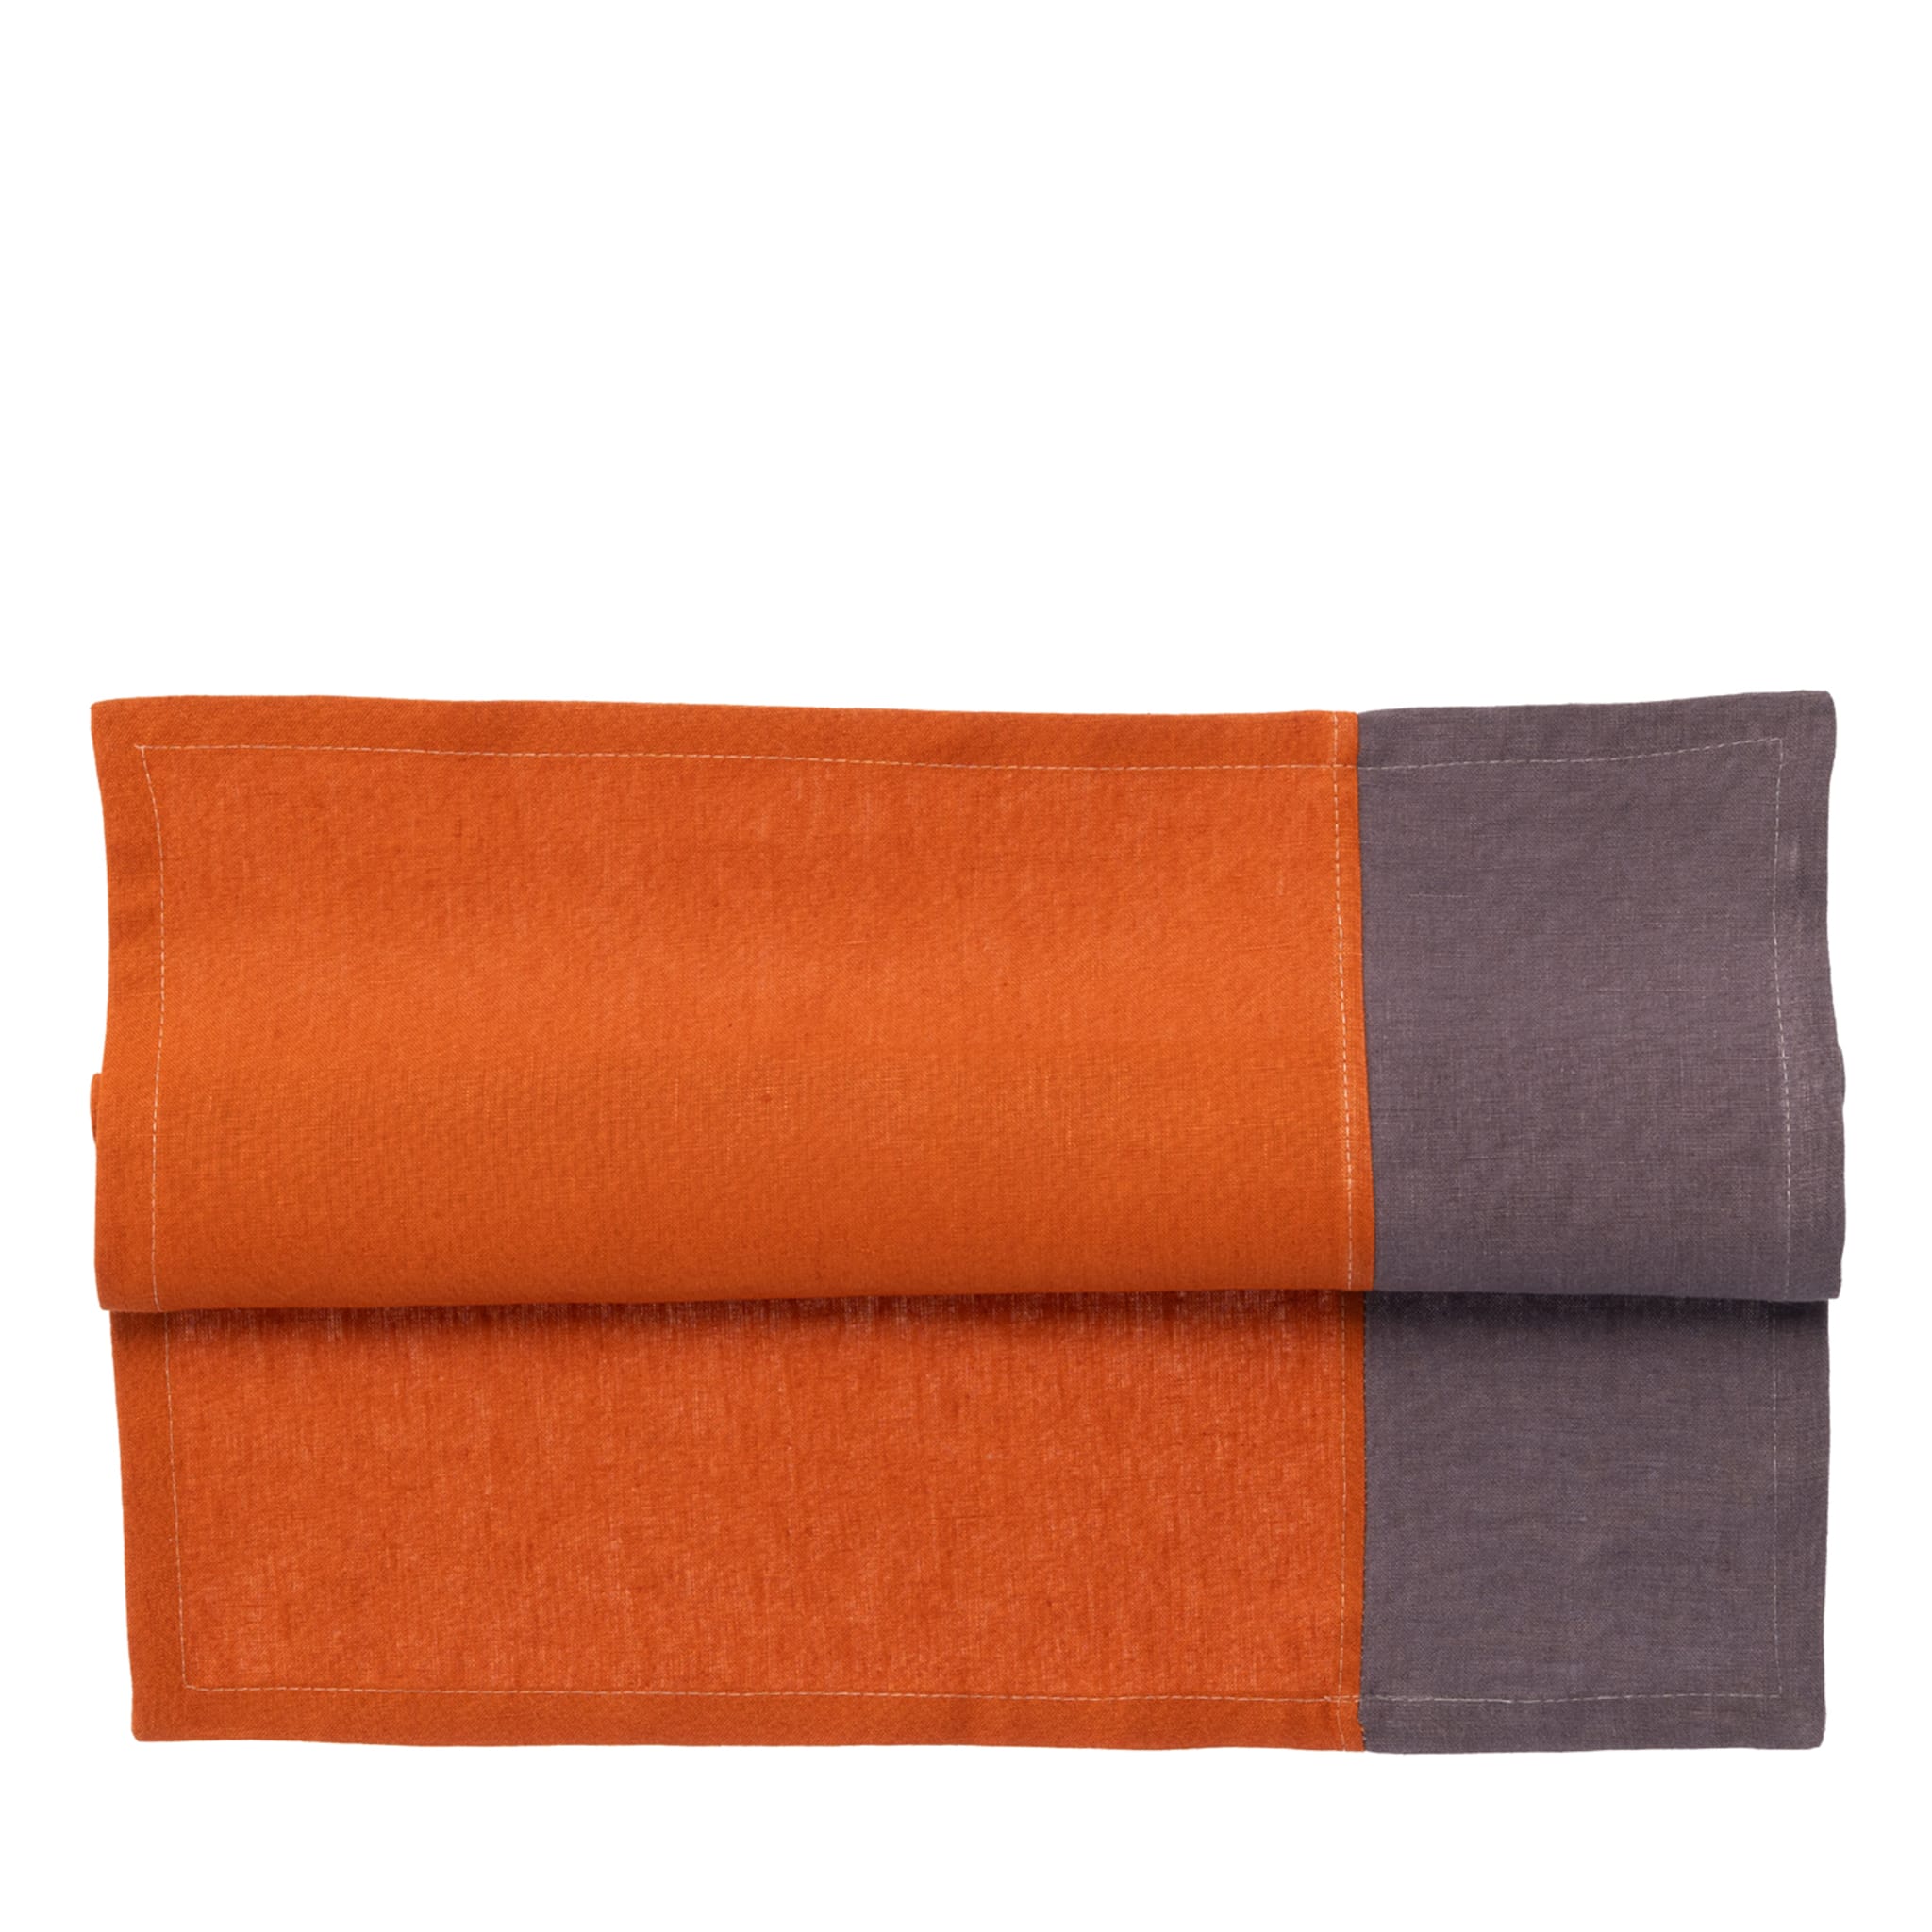 Set of 4 Luxury Bicolor Prune-Orange Linen Napkins - Main view